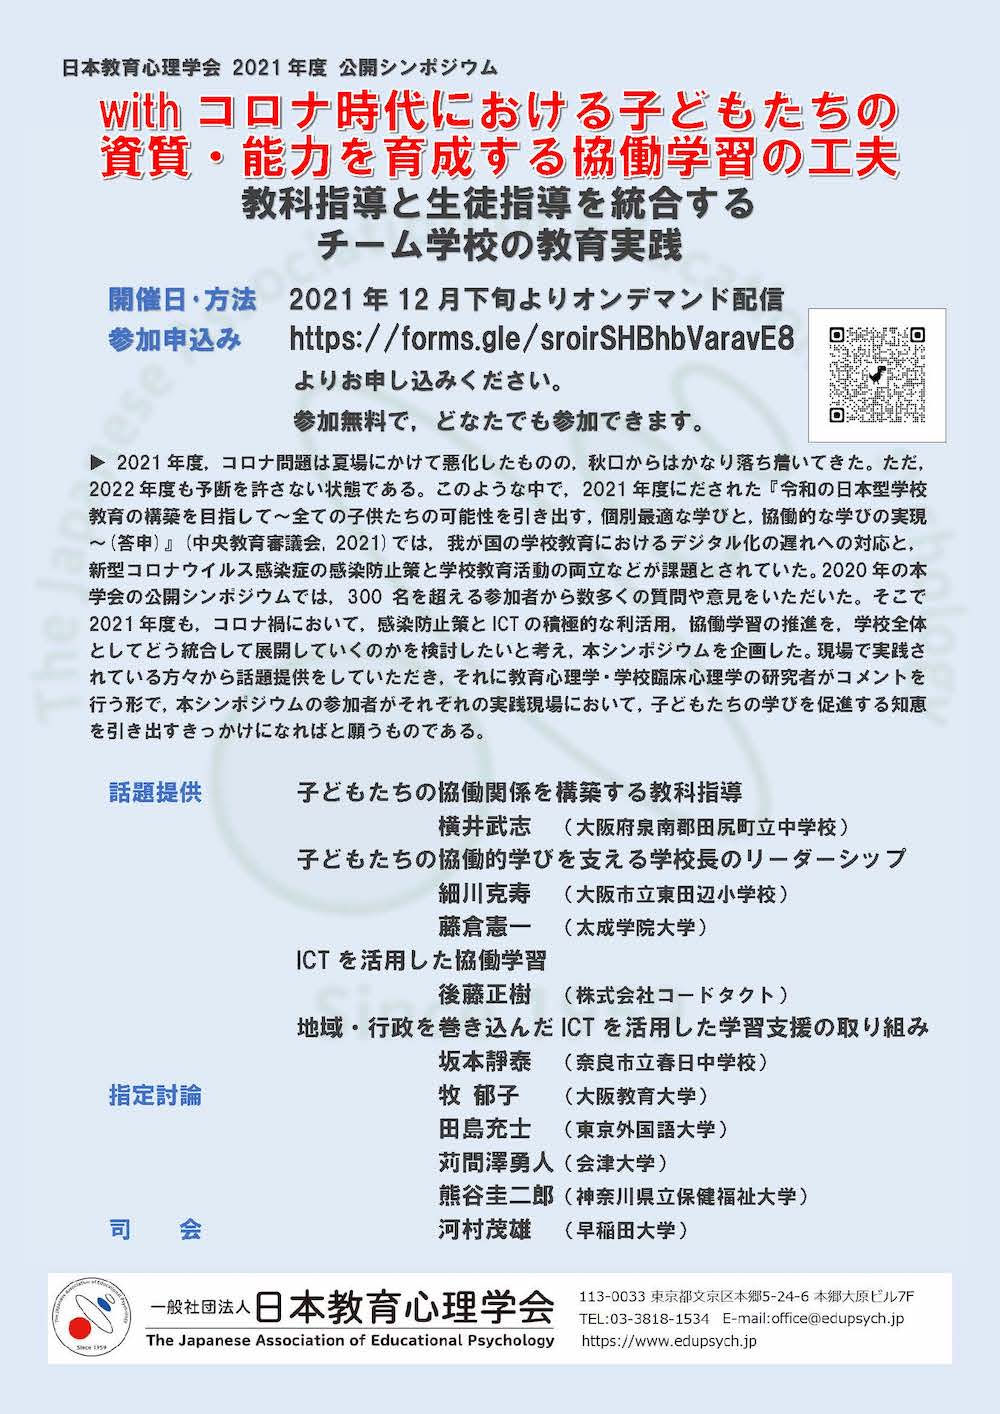 城戸奨励賞授賞論文 - 日本教育心理学会